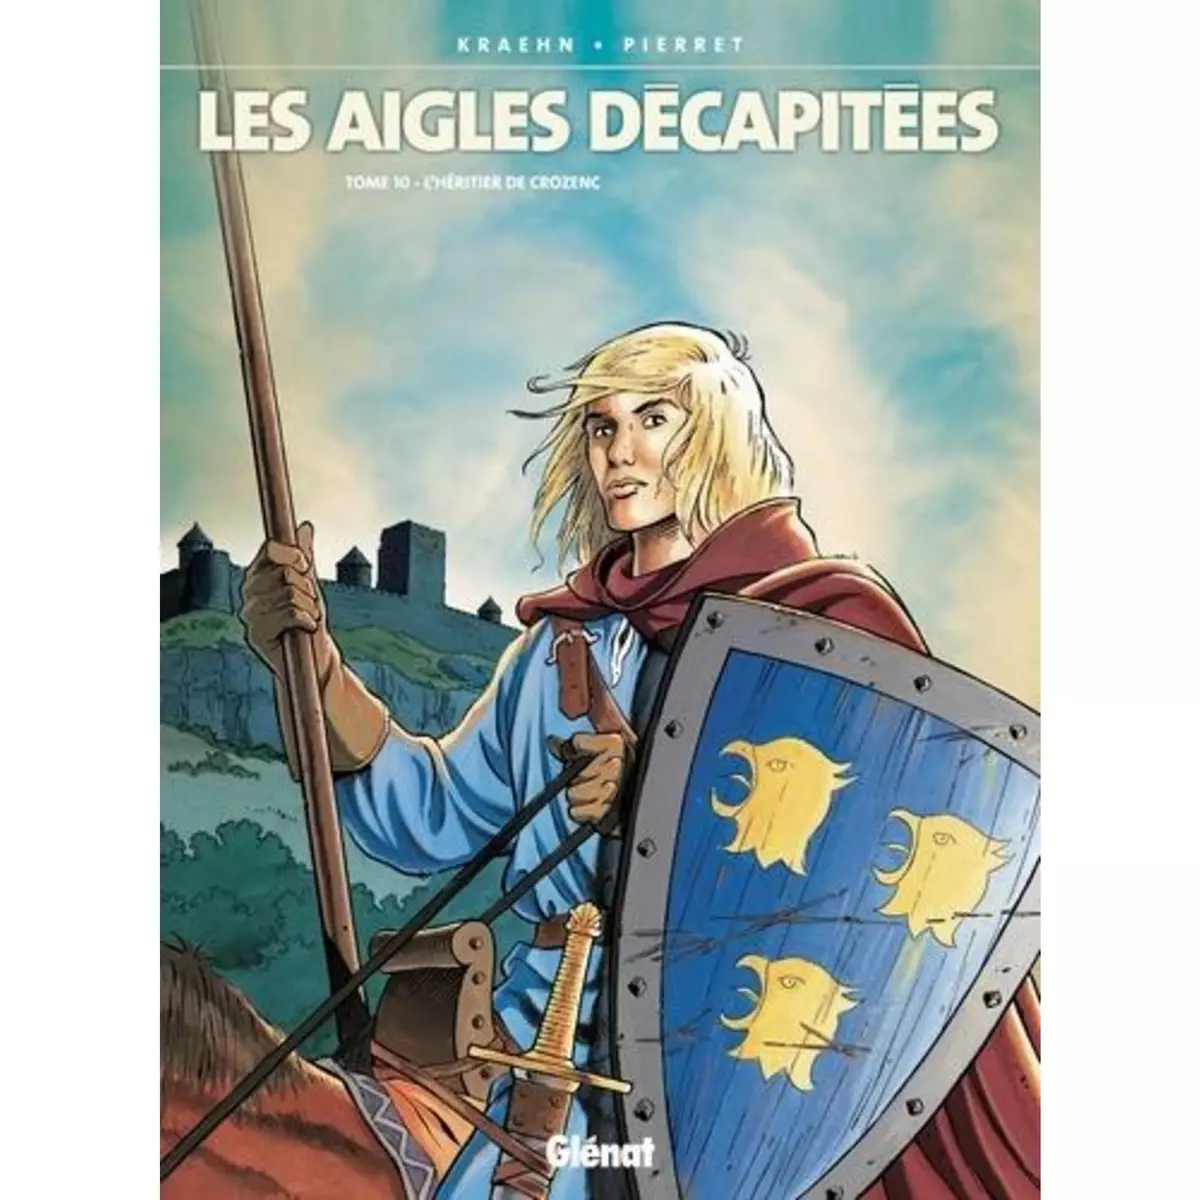  LES AIGLES DECAPITEES TOME 10 : L'HERITIER DE CROZENC, Kraehn Jean-Charles